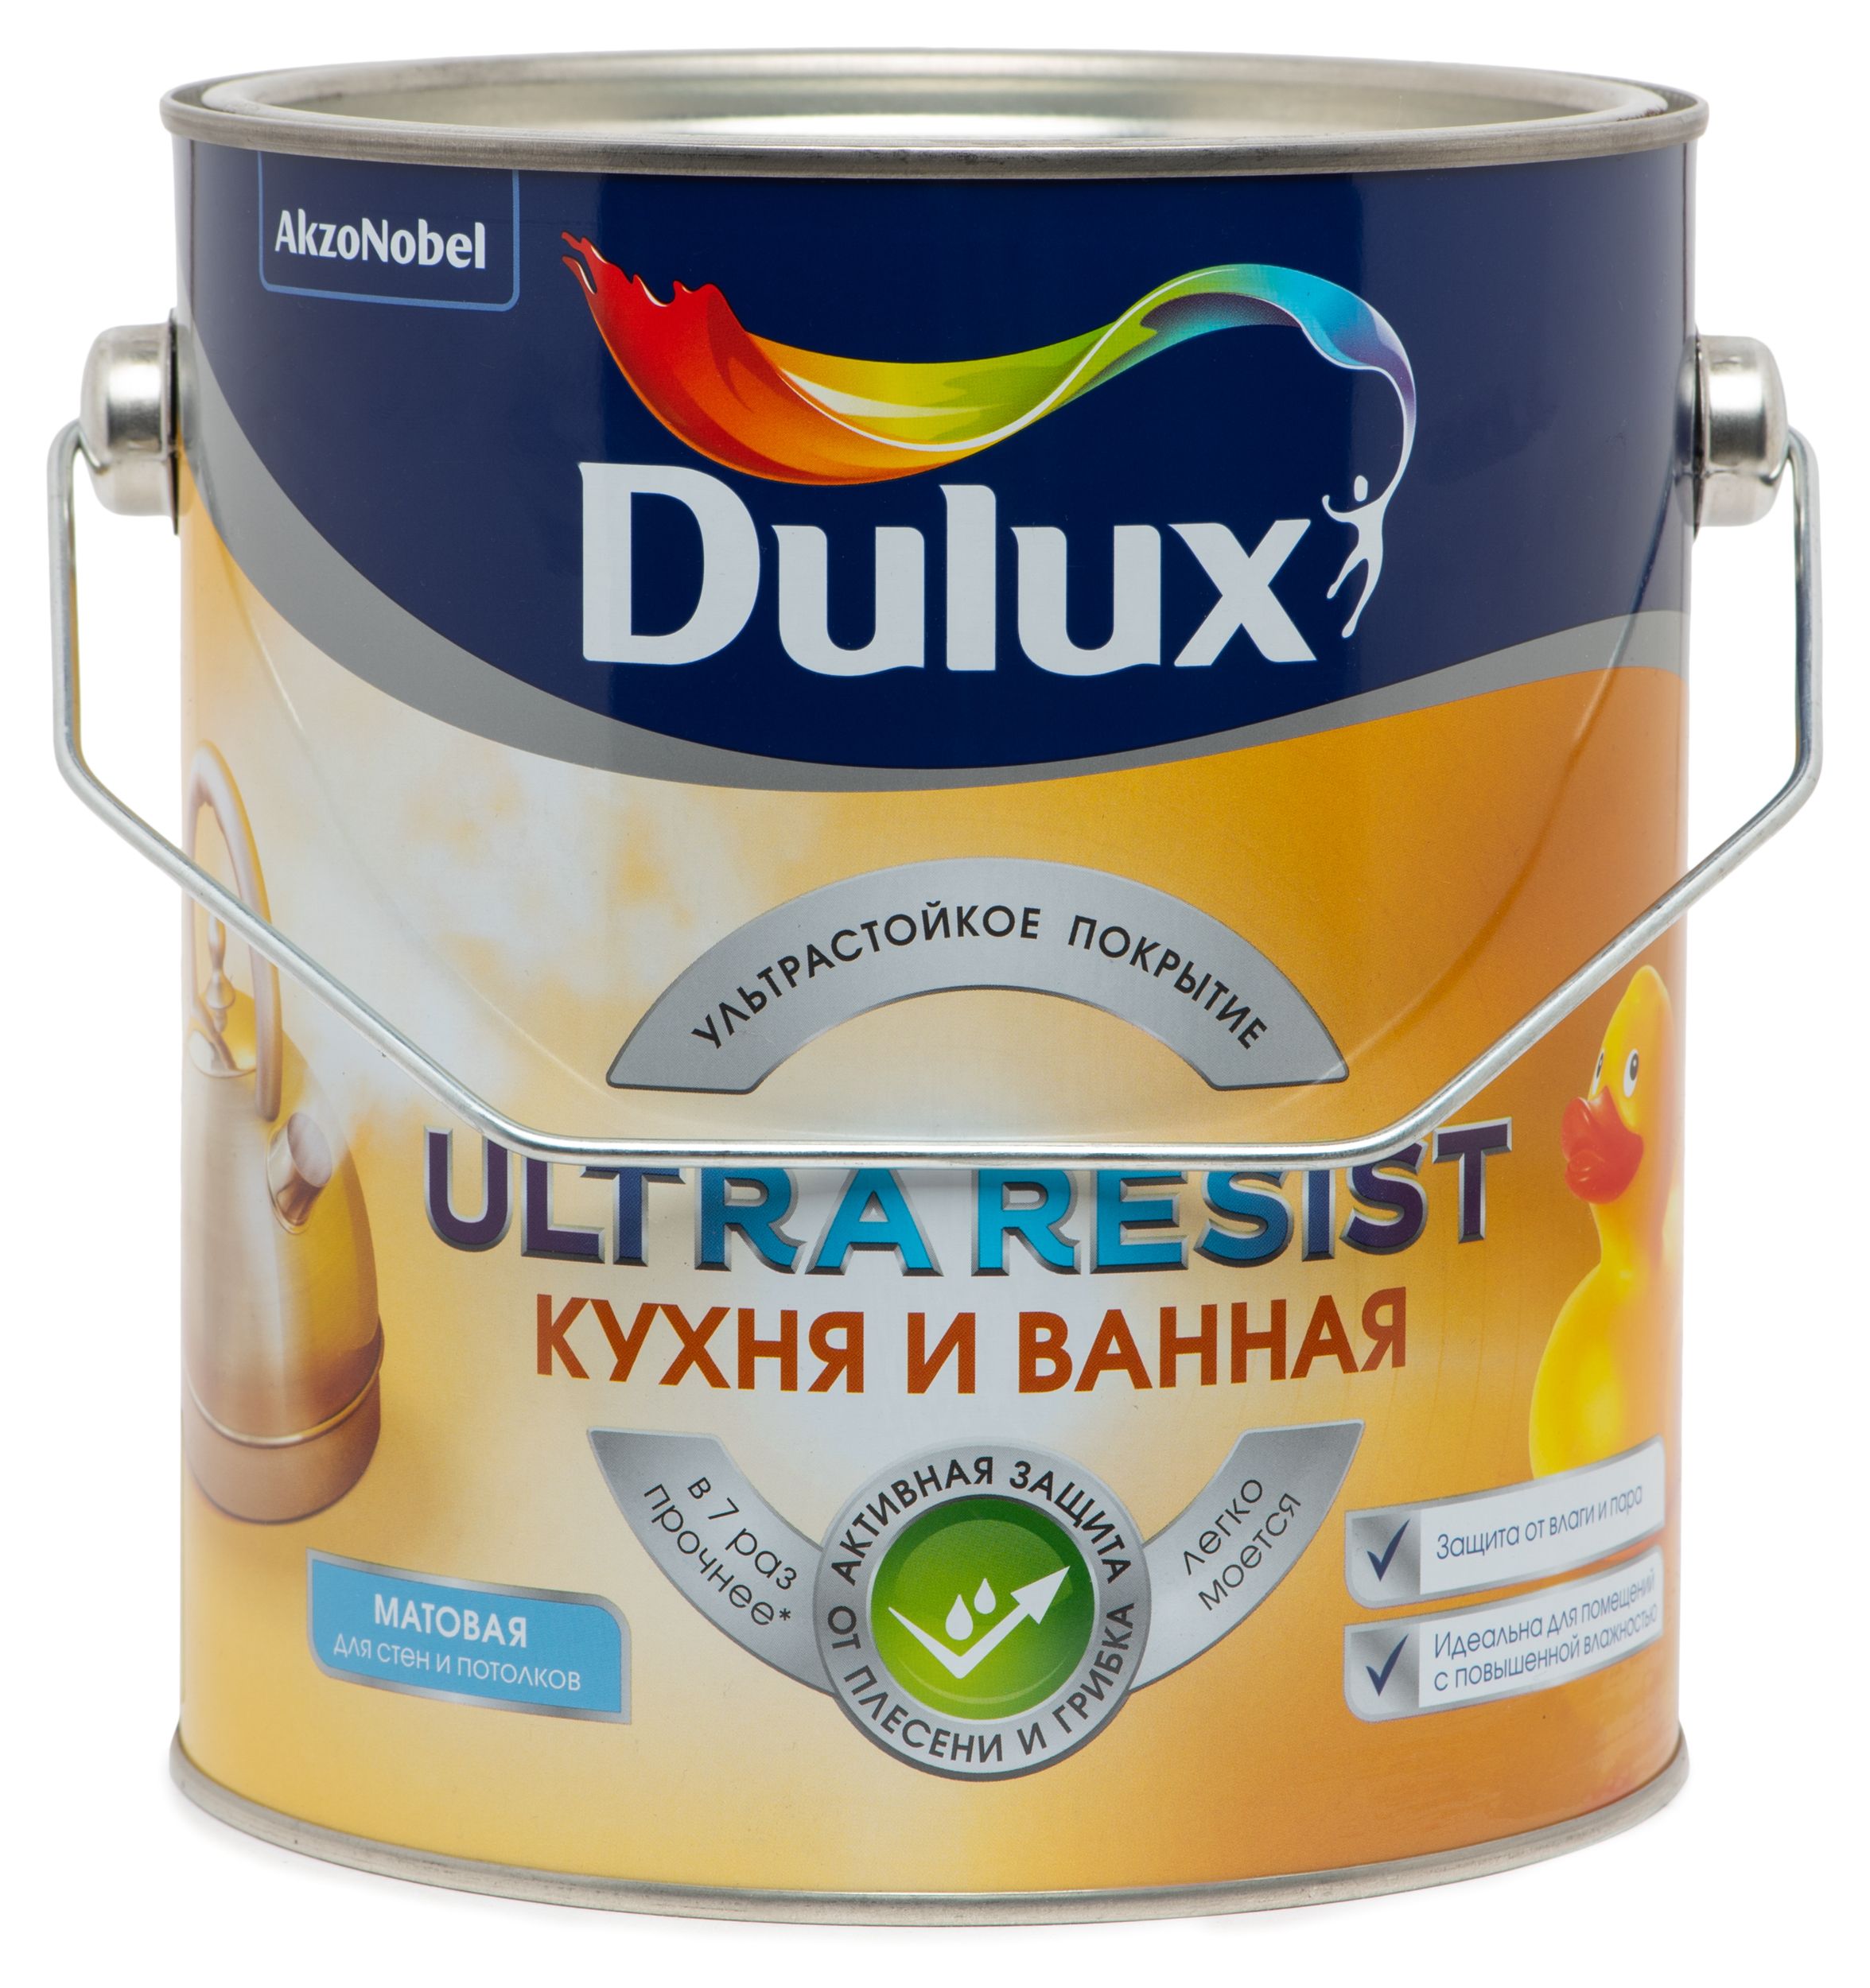 Ультра резист. Dulux Ultra resist. Dulux Ultra resist 5л. Краска Dulux resist для кухни и ванной. Краска водно-дисперсионная Dulux Ultra resist.